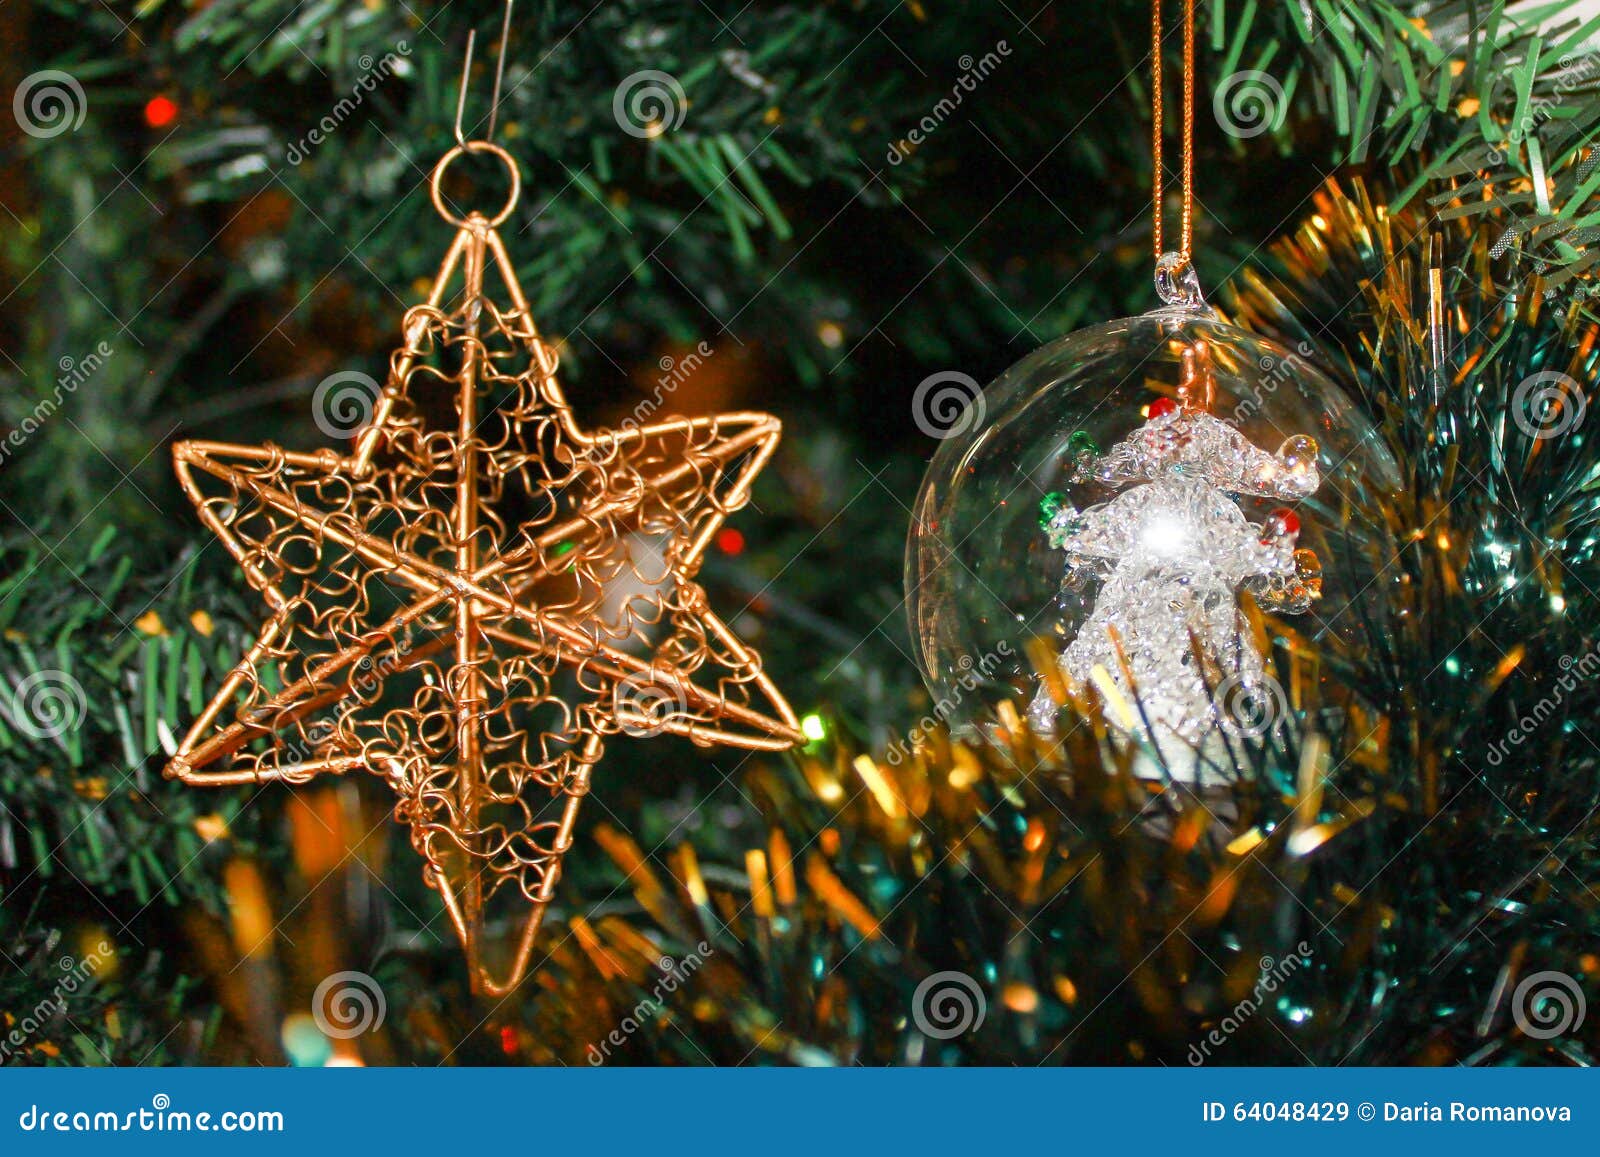 Stella Sull Albero Di Natale.Stella E Palla Sull Albero Di Natale Immagine Stock Immagine Di Decori Neve 64048429